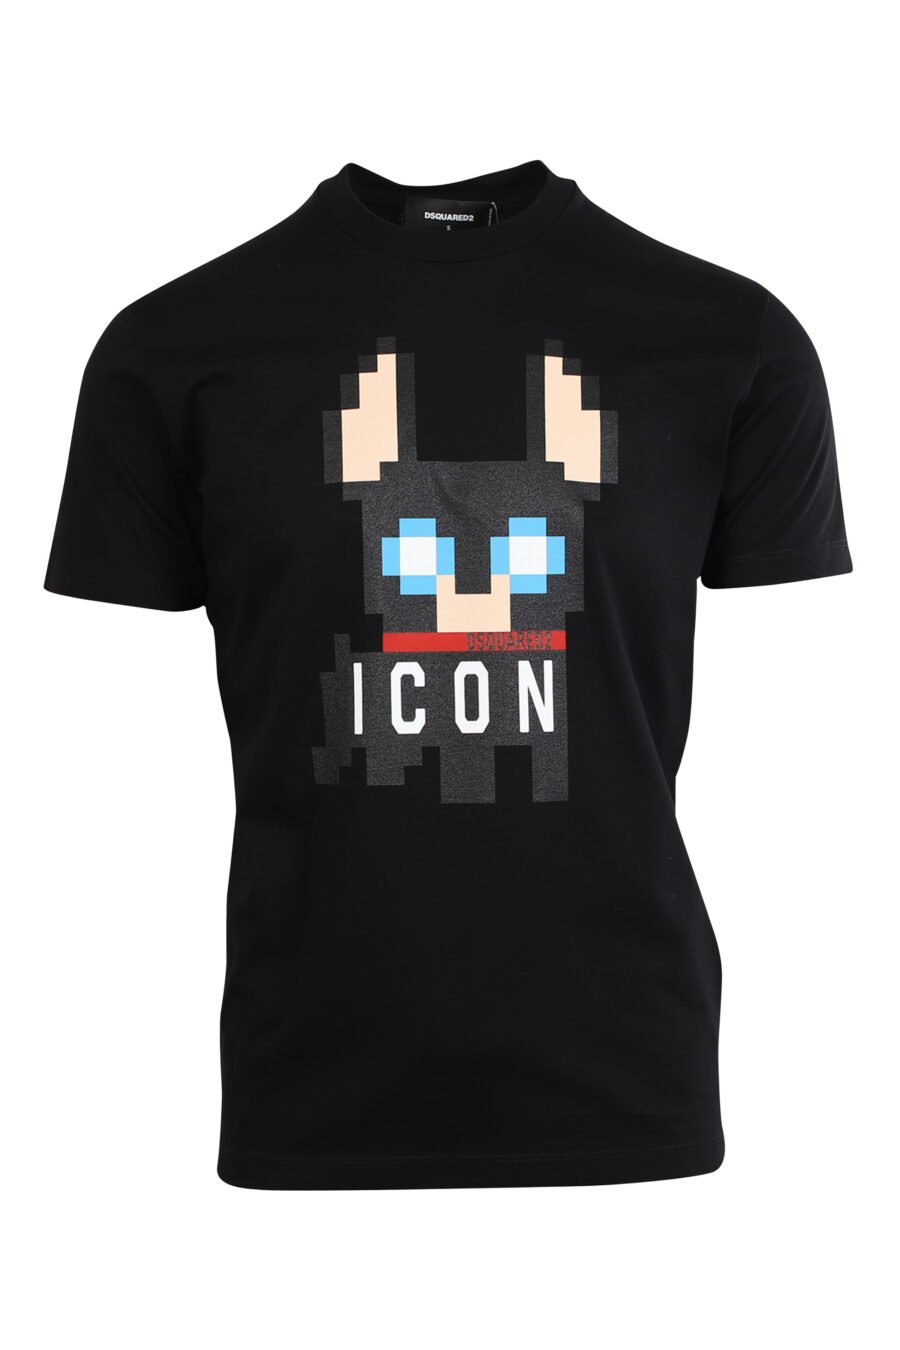 Camiseta negra con maxilogo perro "Pixeled" - 8052134980774